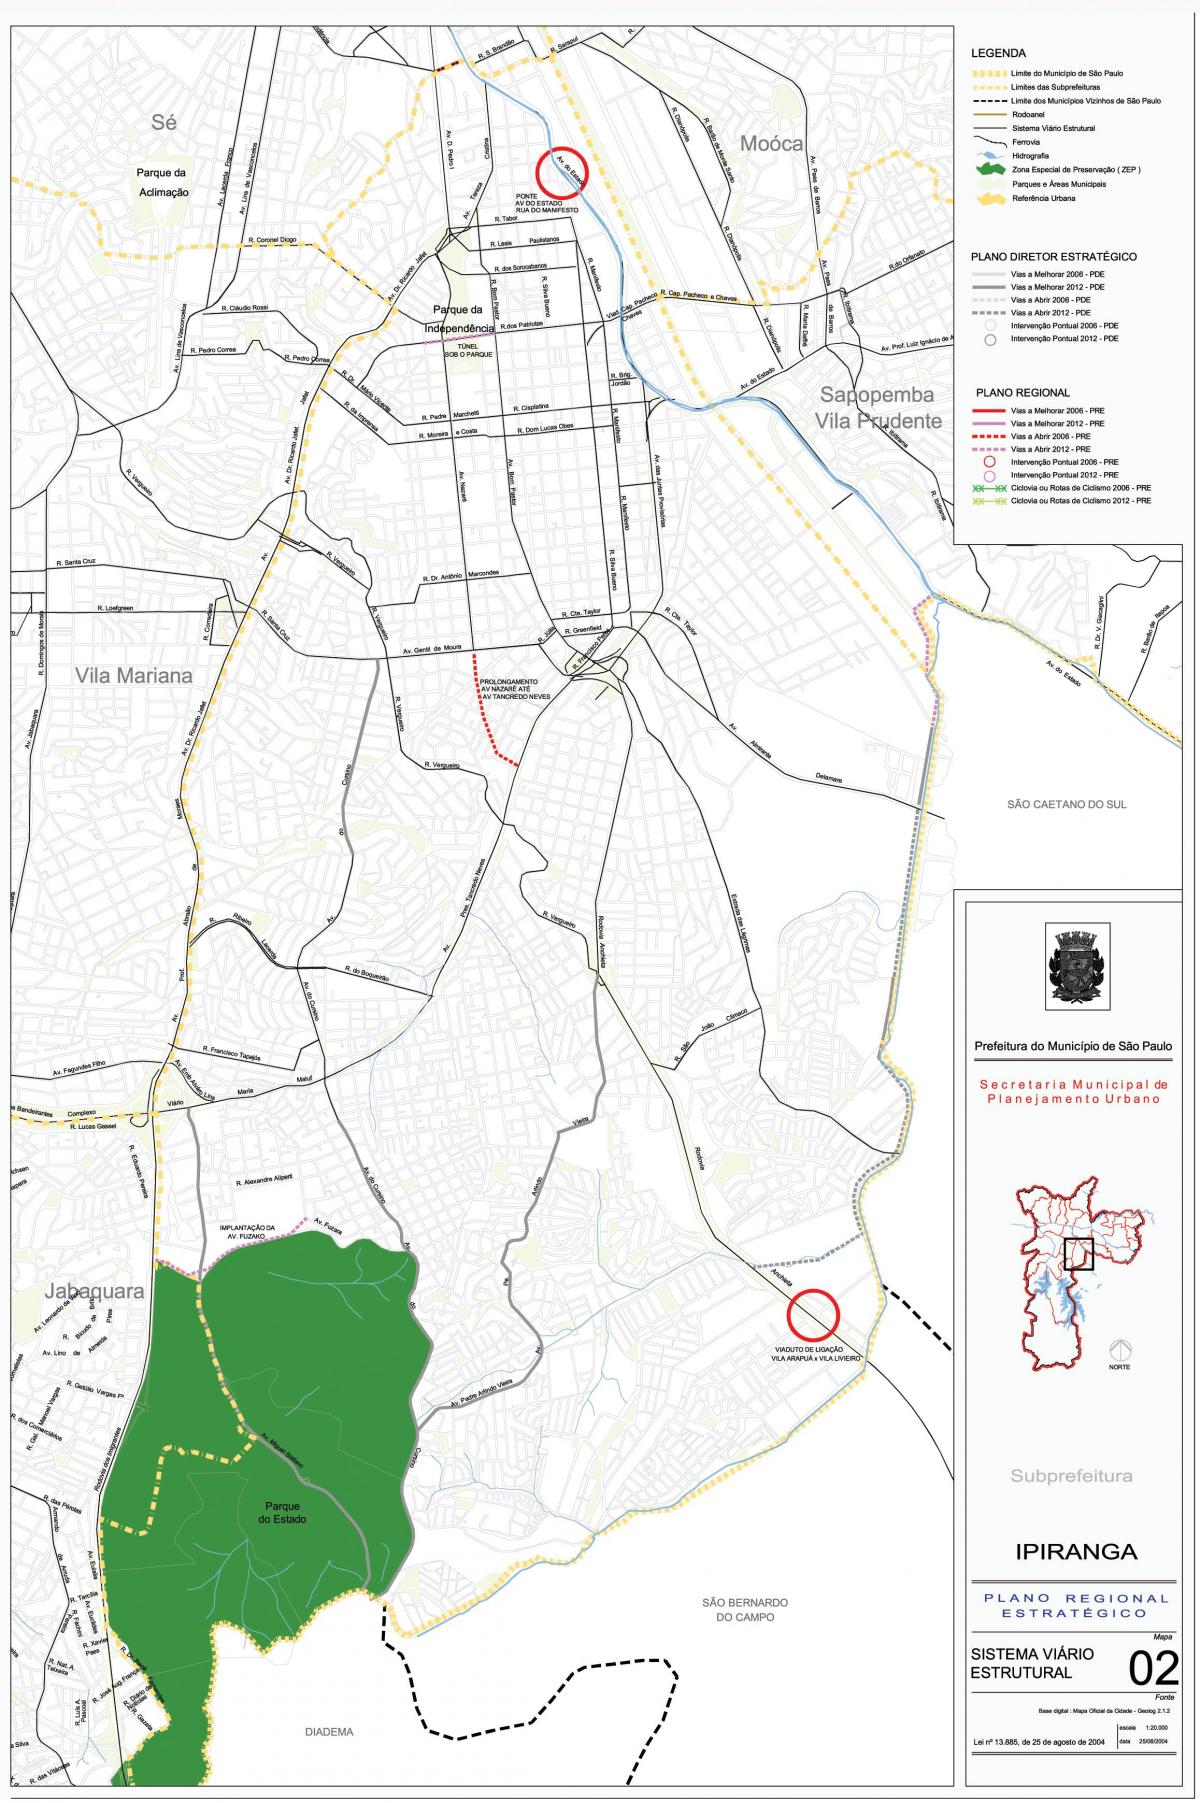 Mapa Ipiranga São Paulo - Cesty